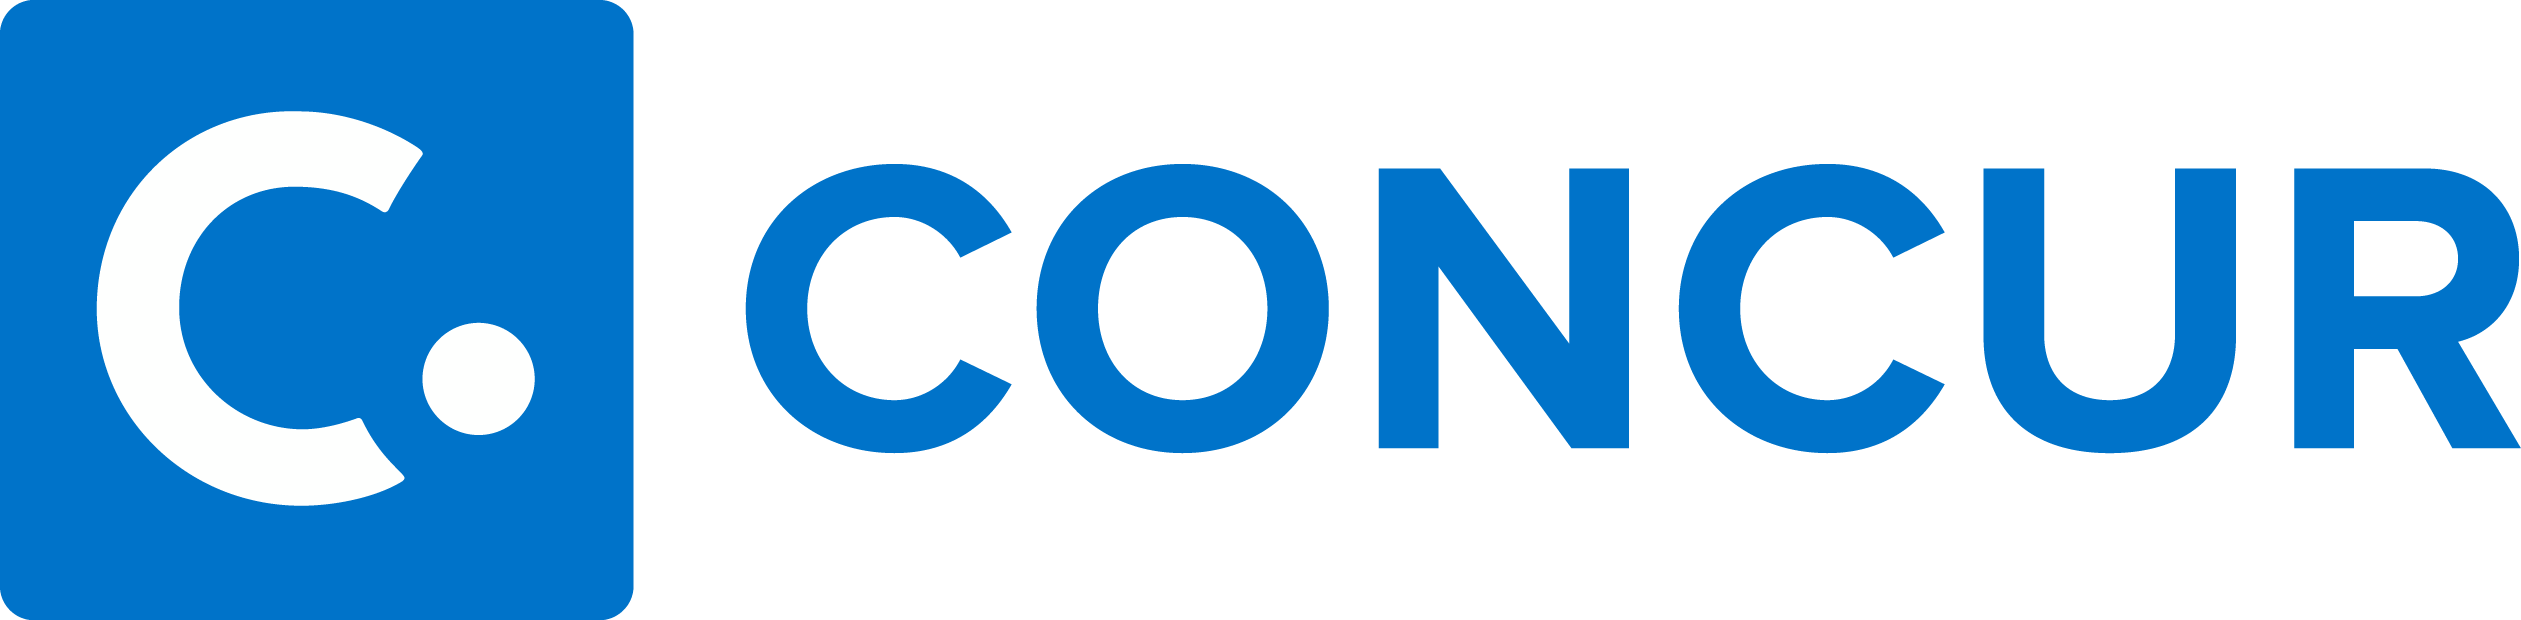 Concur Logo - Concur Logo Vector Free Download